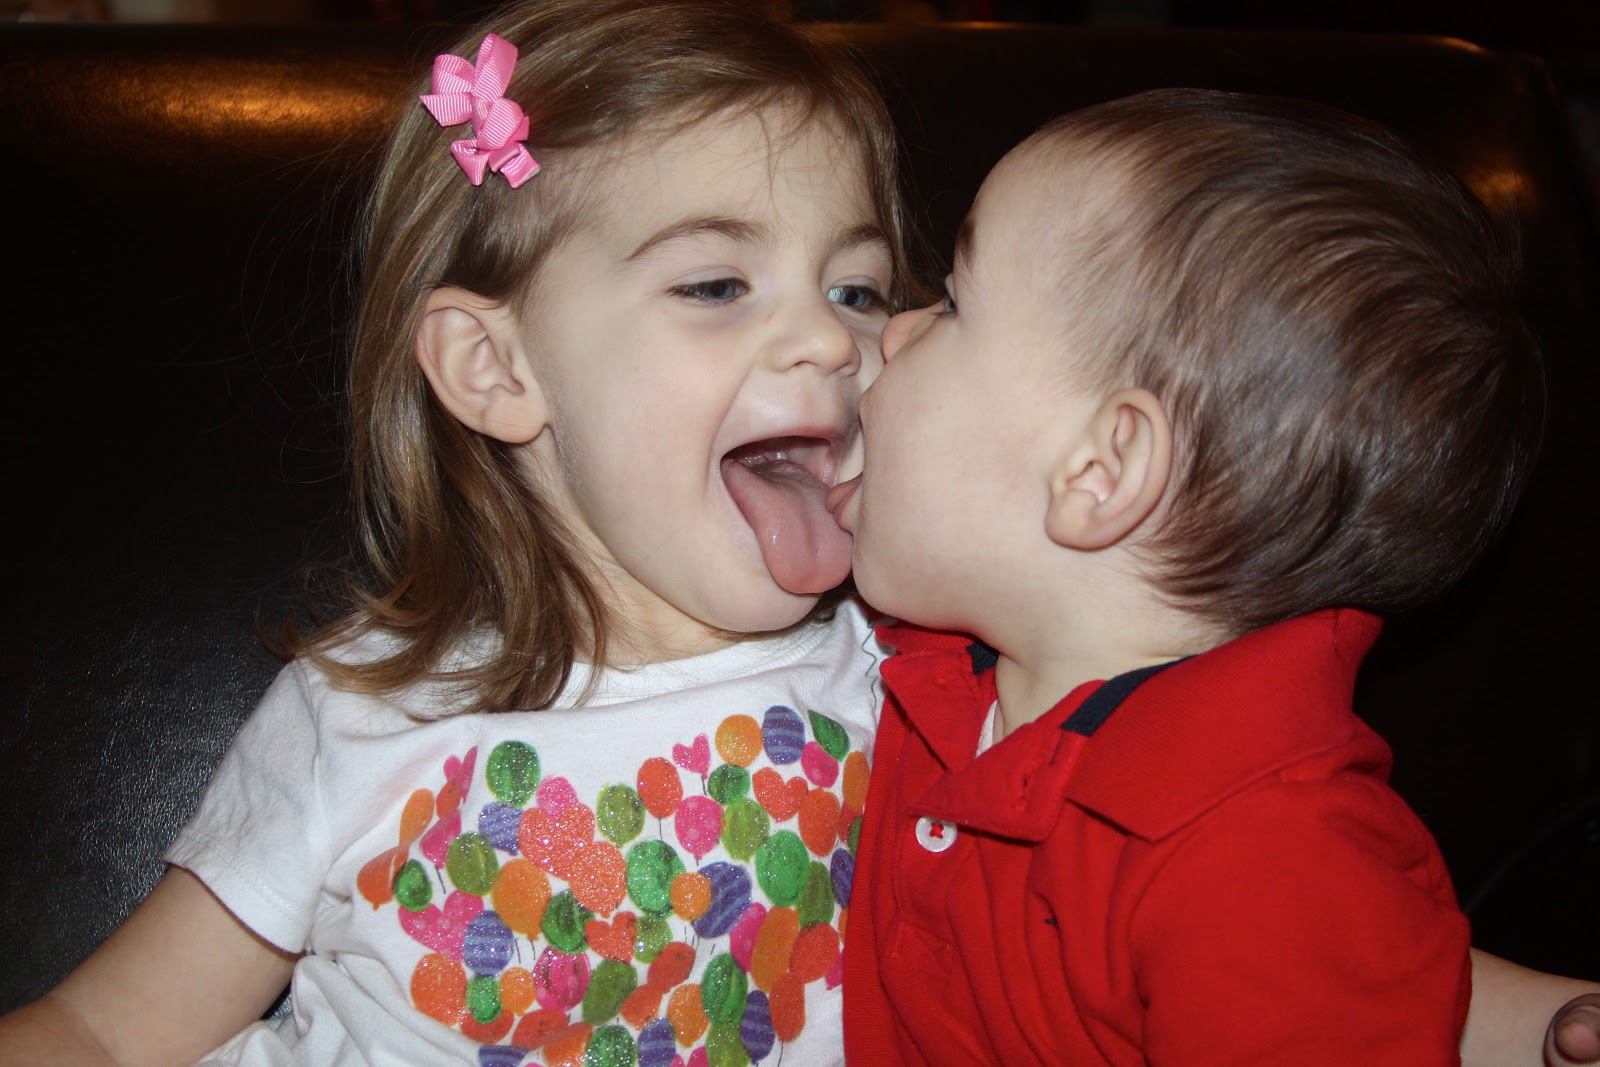 Sister mouth. Детский поцелуй. Дети поцелуй с языком. Поцелуй маленьких детей с языком. Дети целуют друг друга с языком.